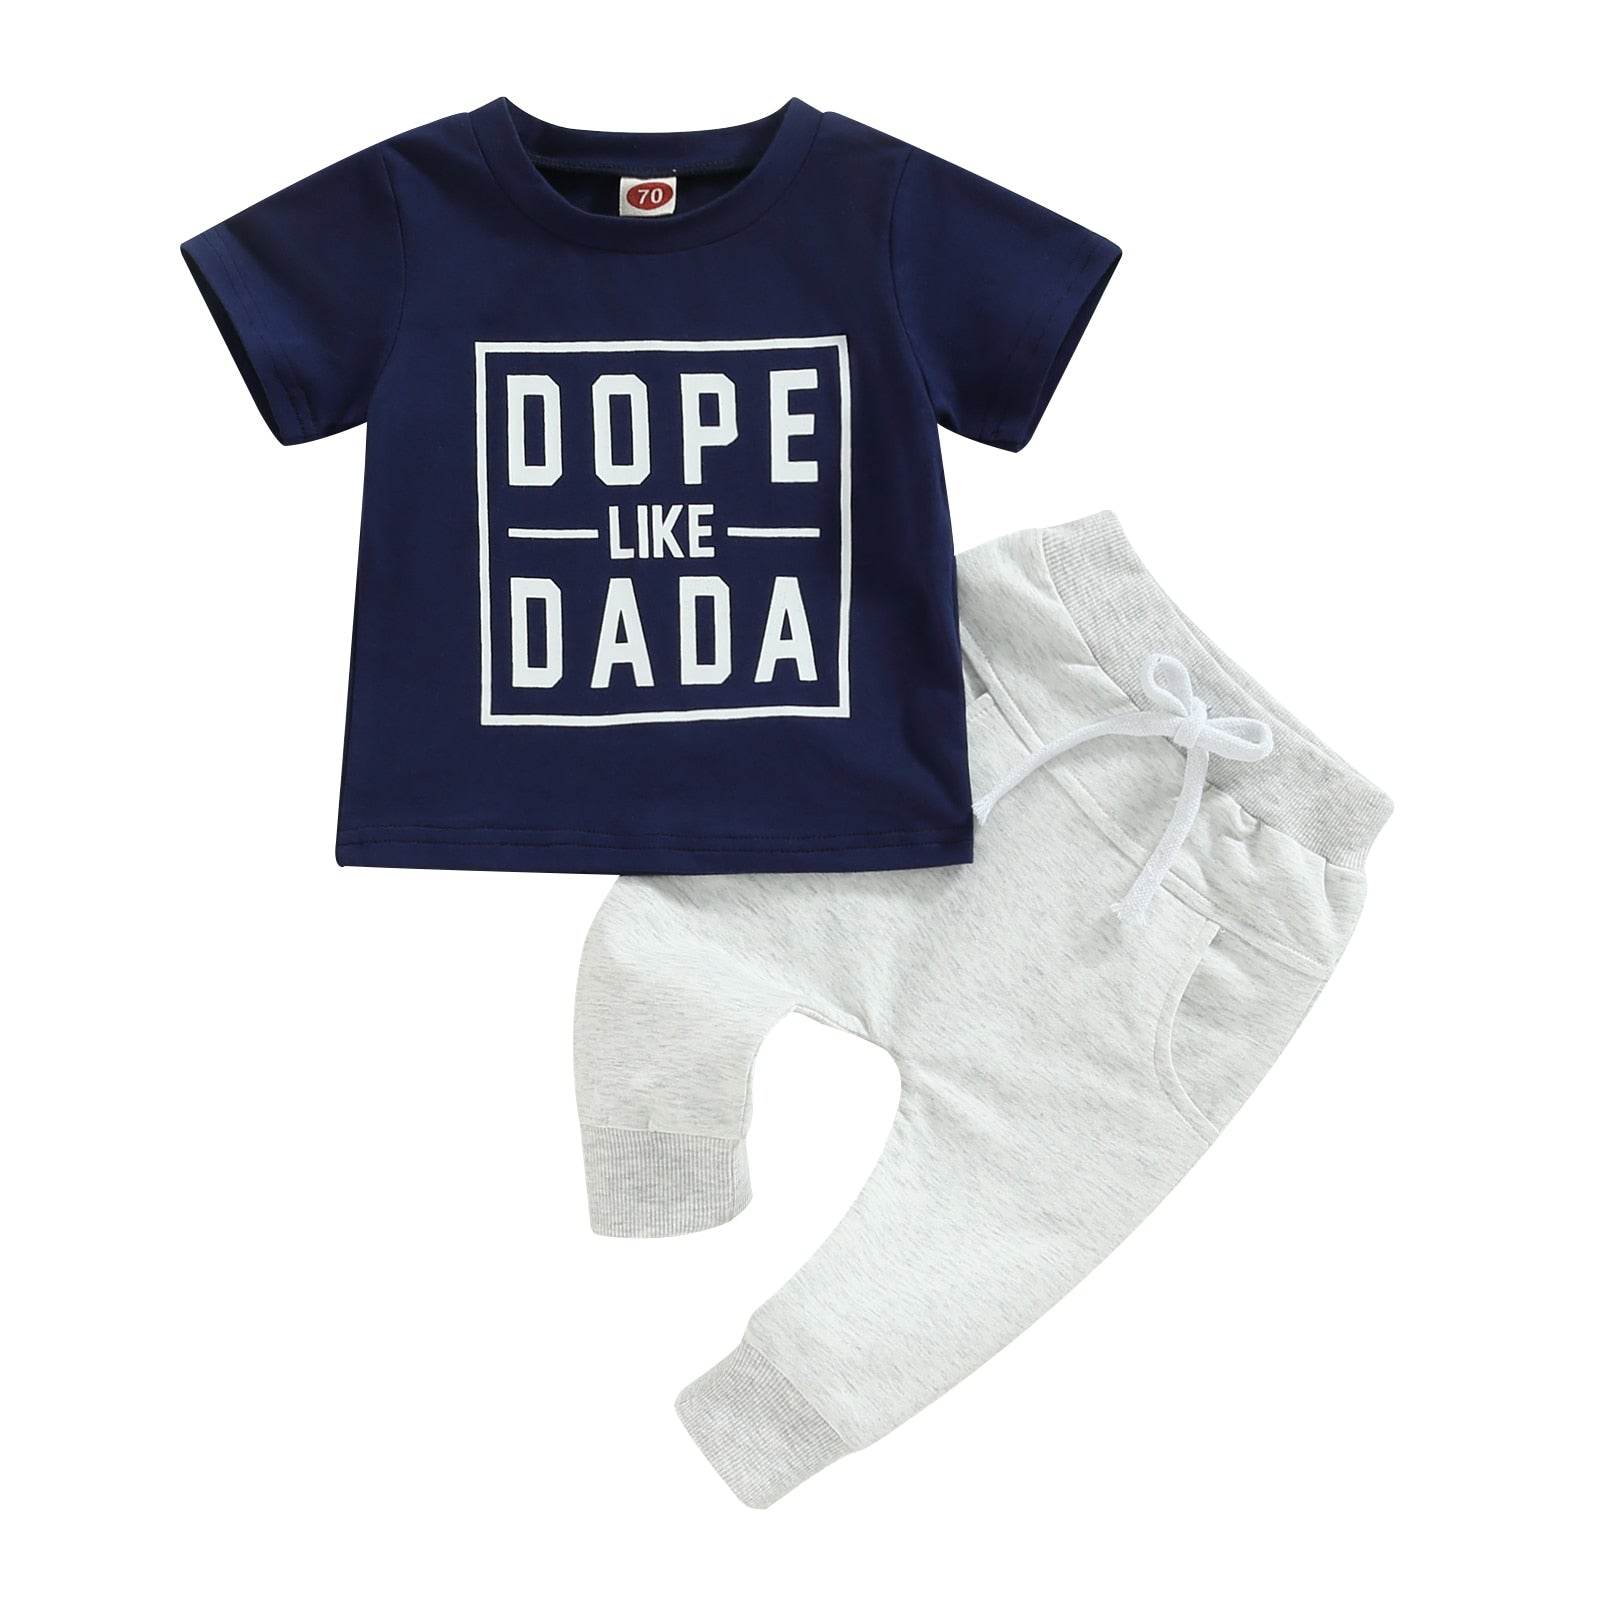 Dope Like Dada Baby Clothing Set